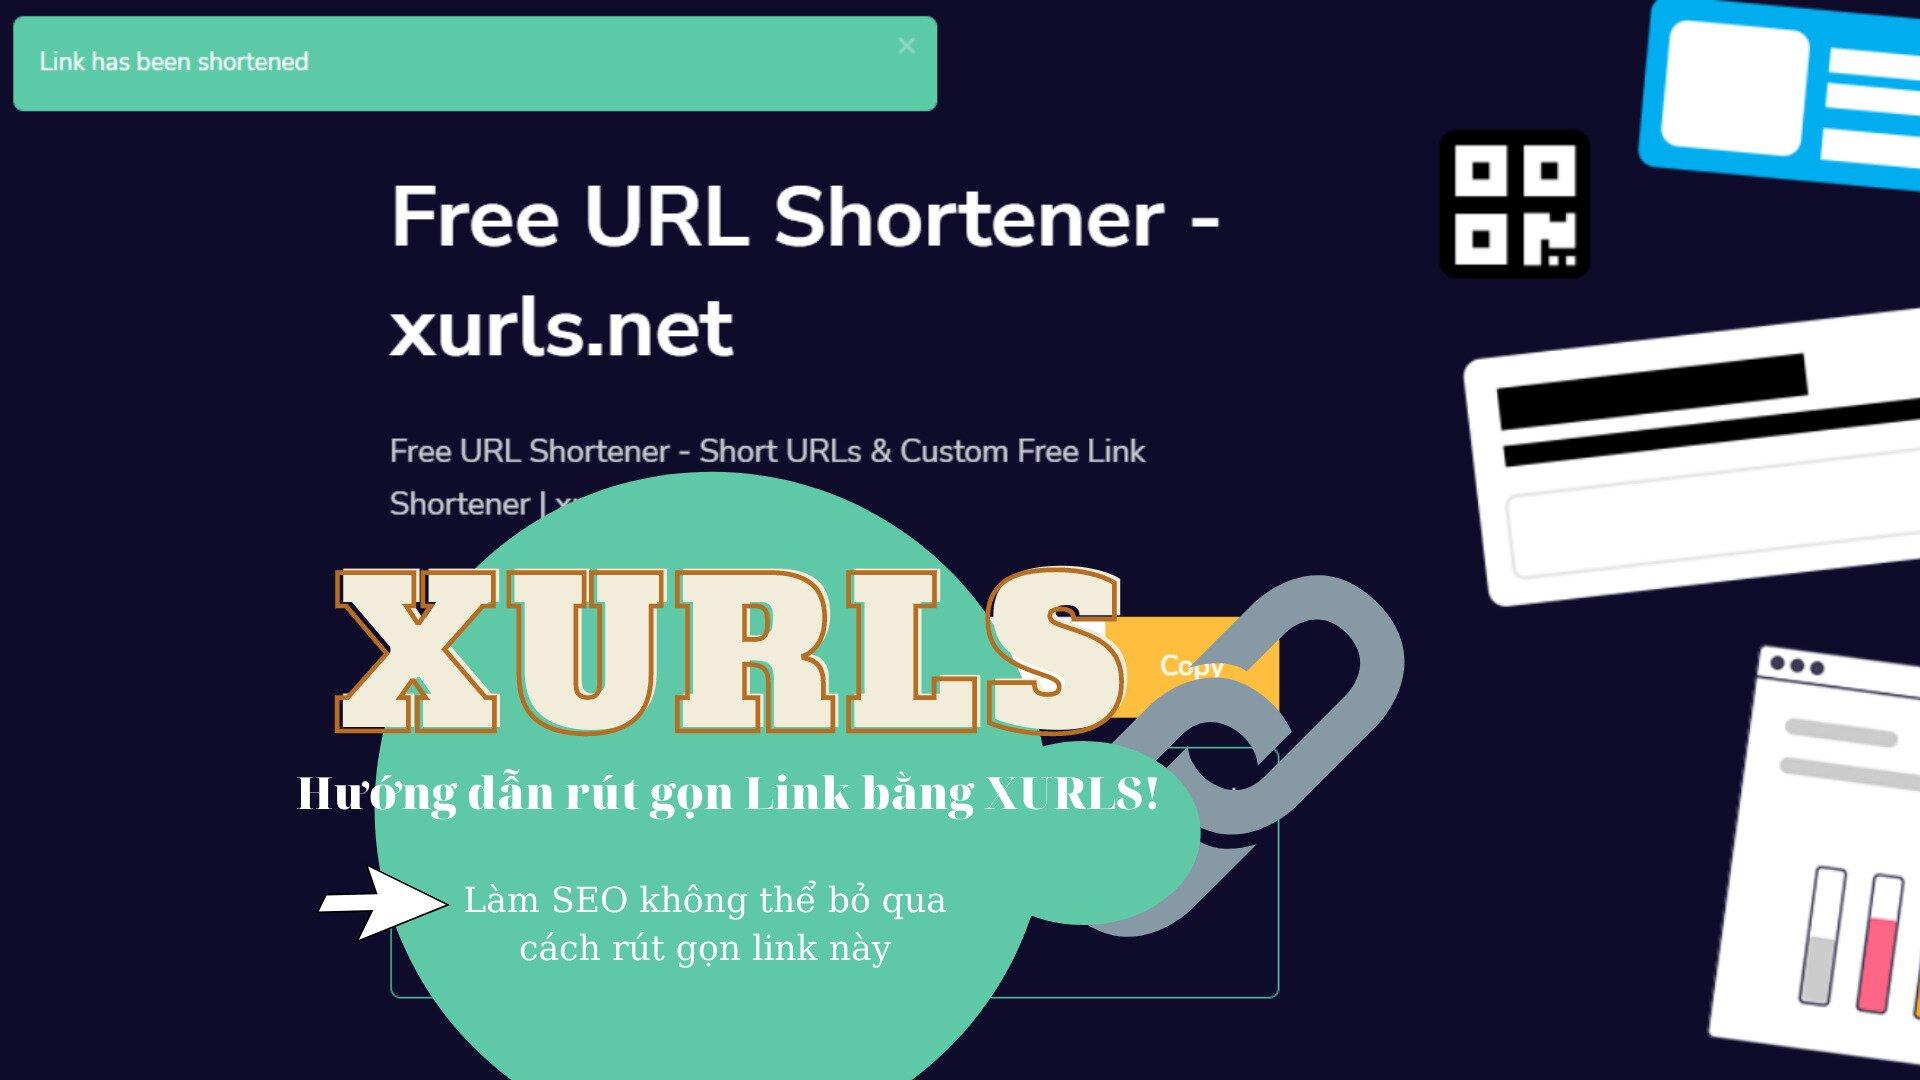 XURLS - Trang web rút gọn link miễn phí với nhiều tính năng cực kỳ hữu ích - BlogAnChoi